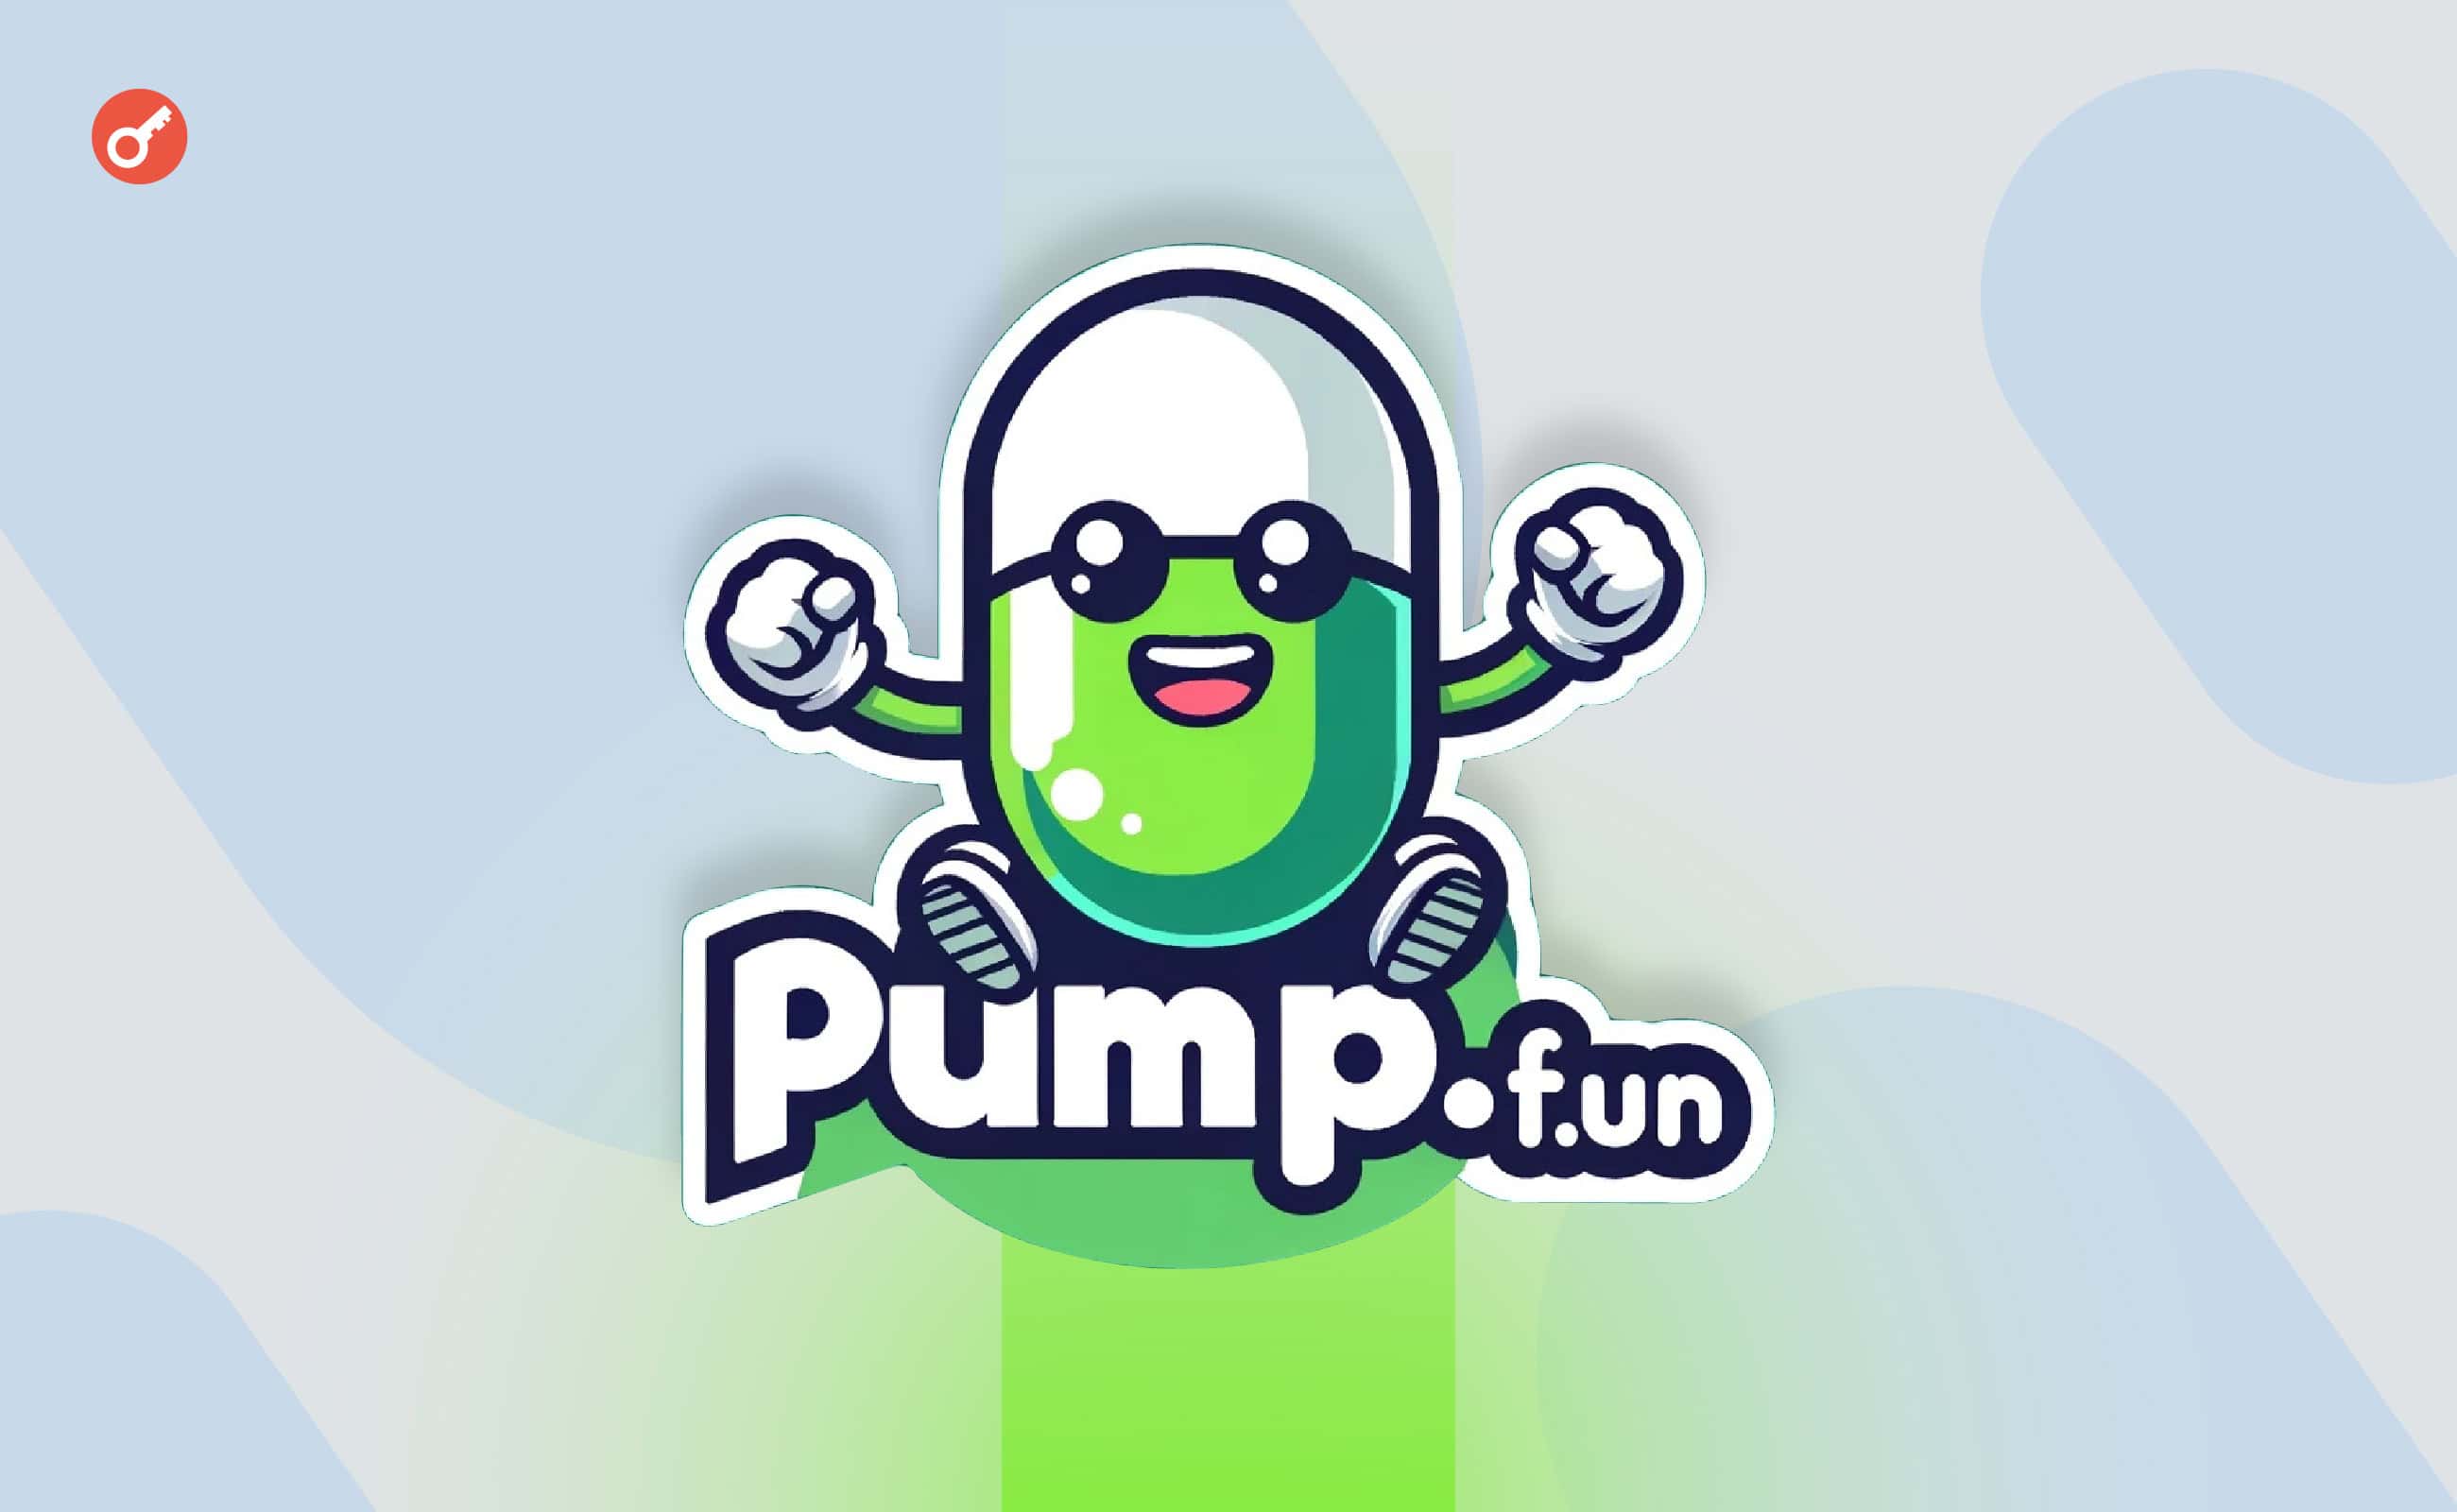 Доход pump.fun сократился на 32% на фоне падения цены Solana. Заглавный коллаж новости.